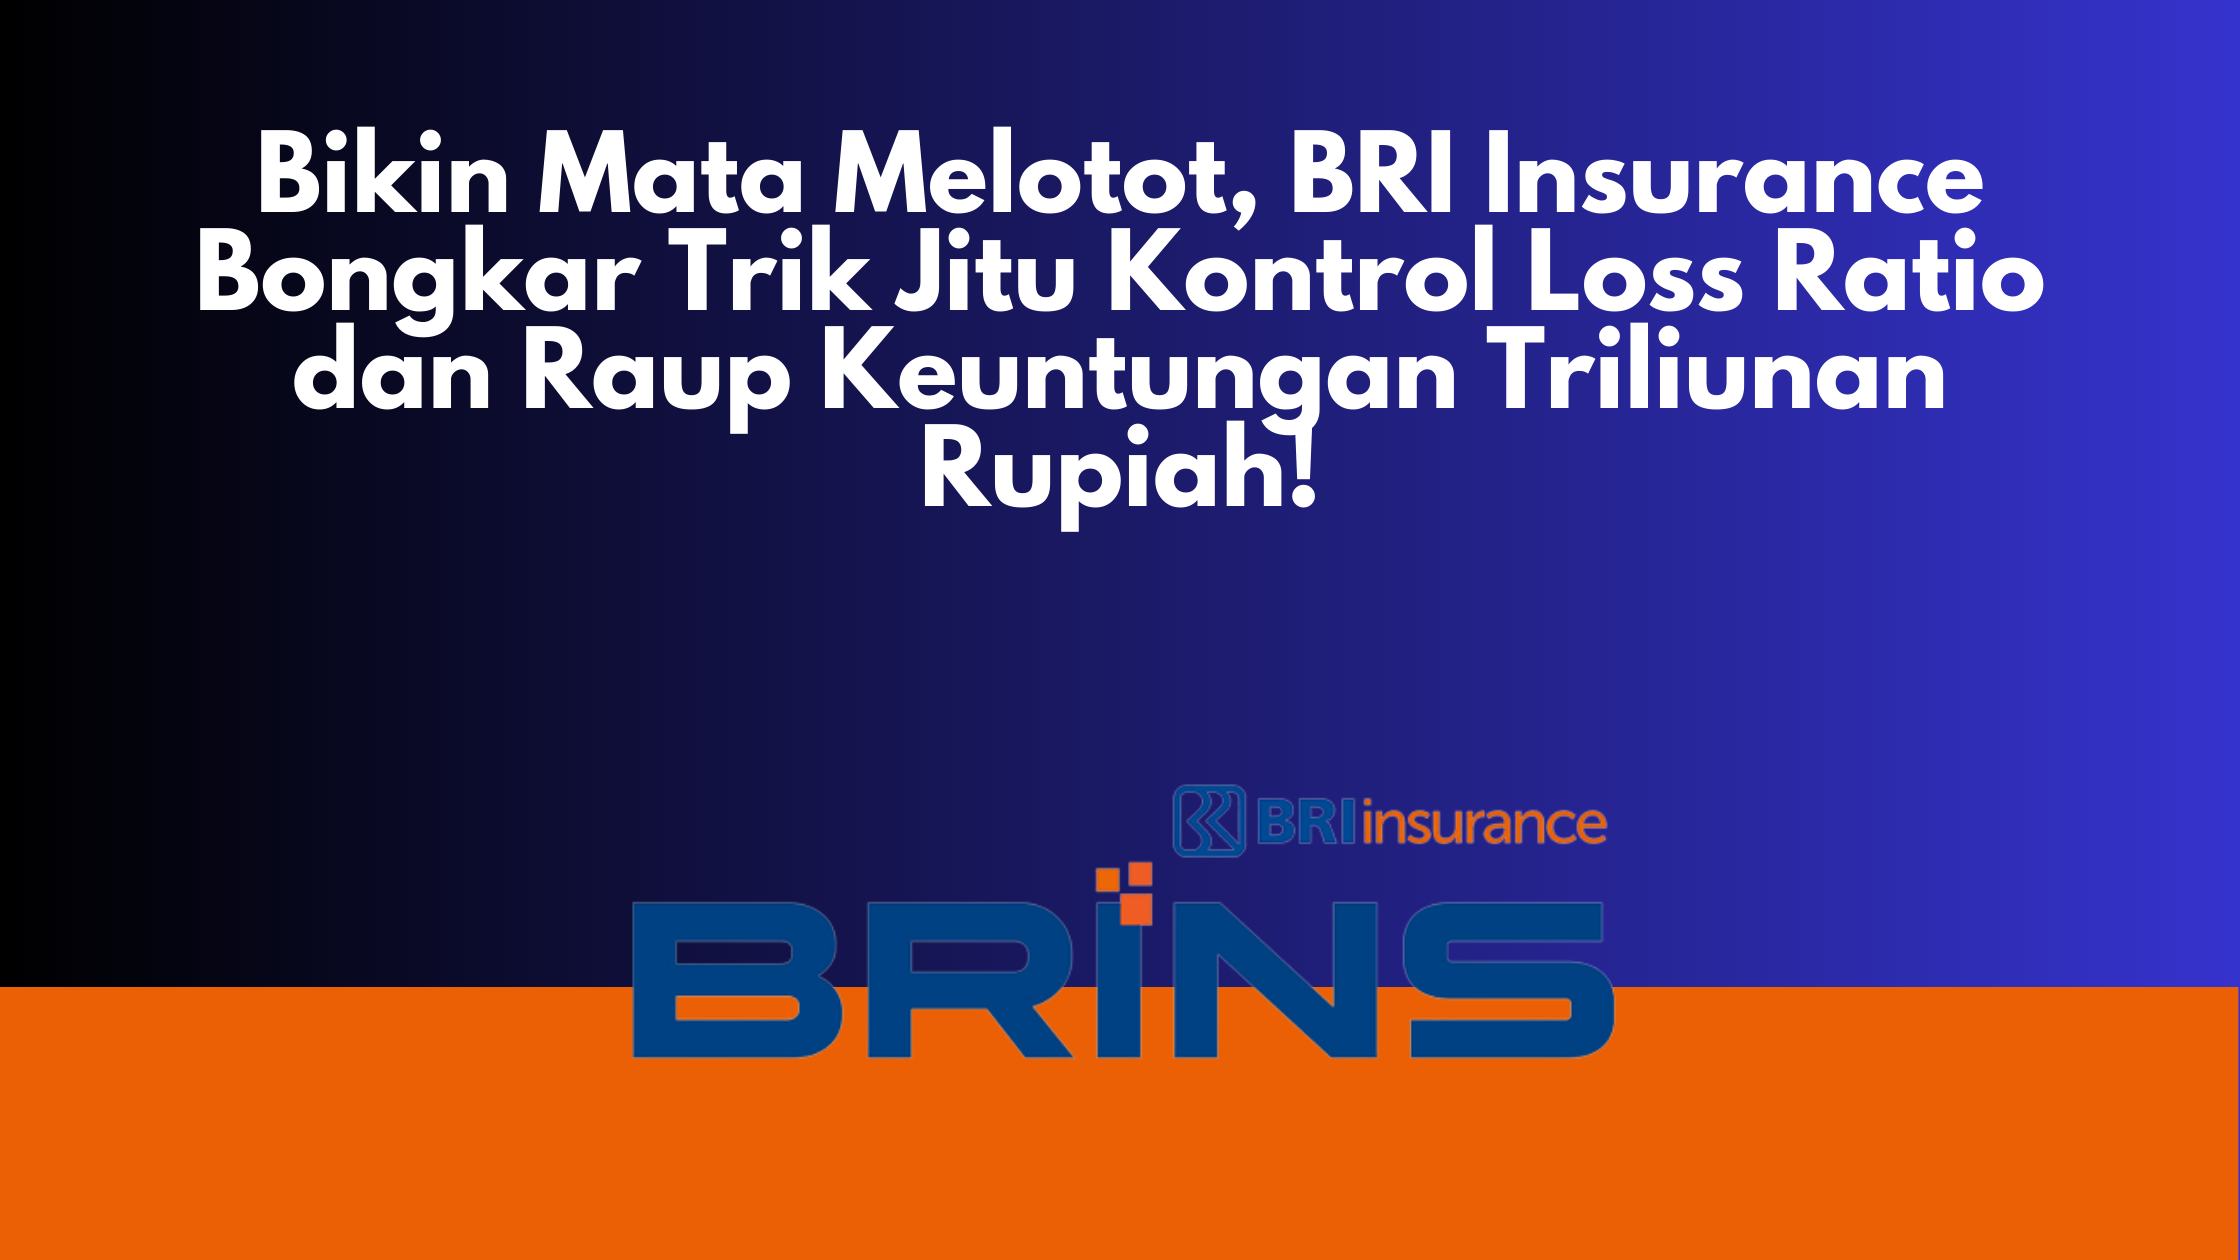 Bikin Mata Melotot, BRI Insurance Bongkar Trik Jitu Kontrol Loss Ratio dan Raup Keuntungan Triliunan Rupiah!